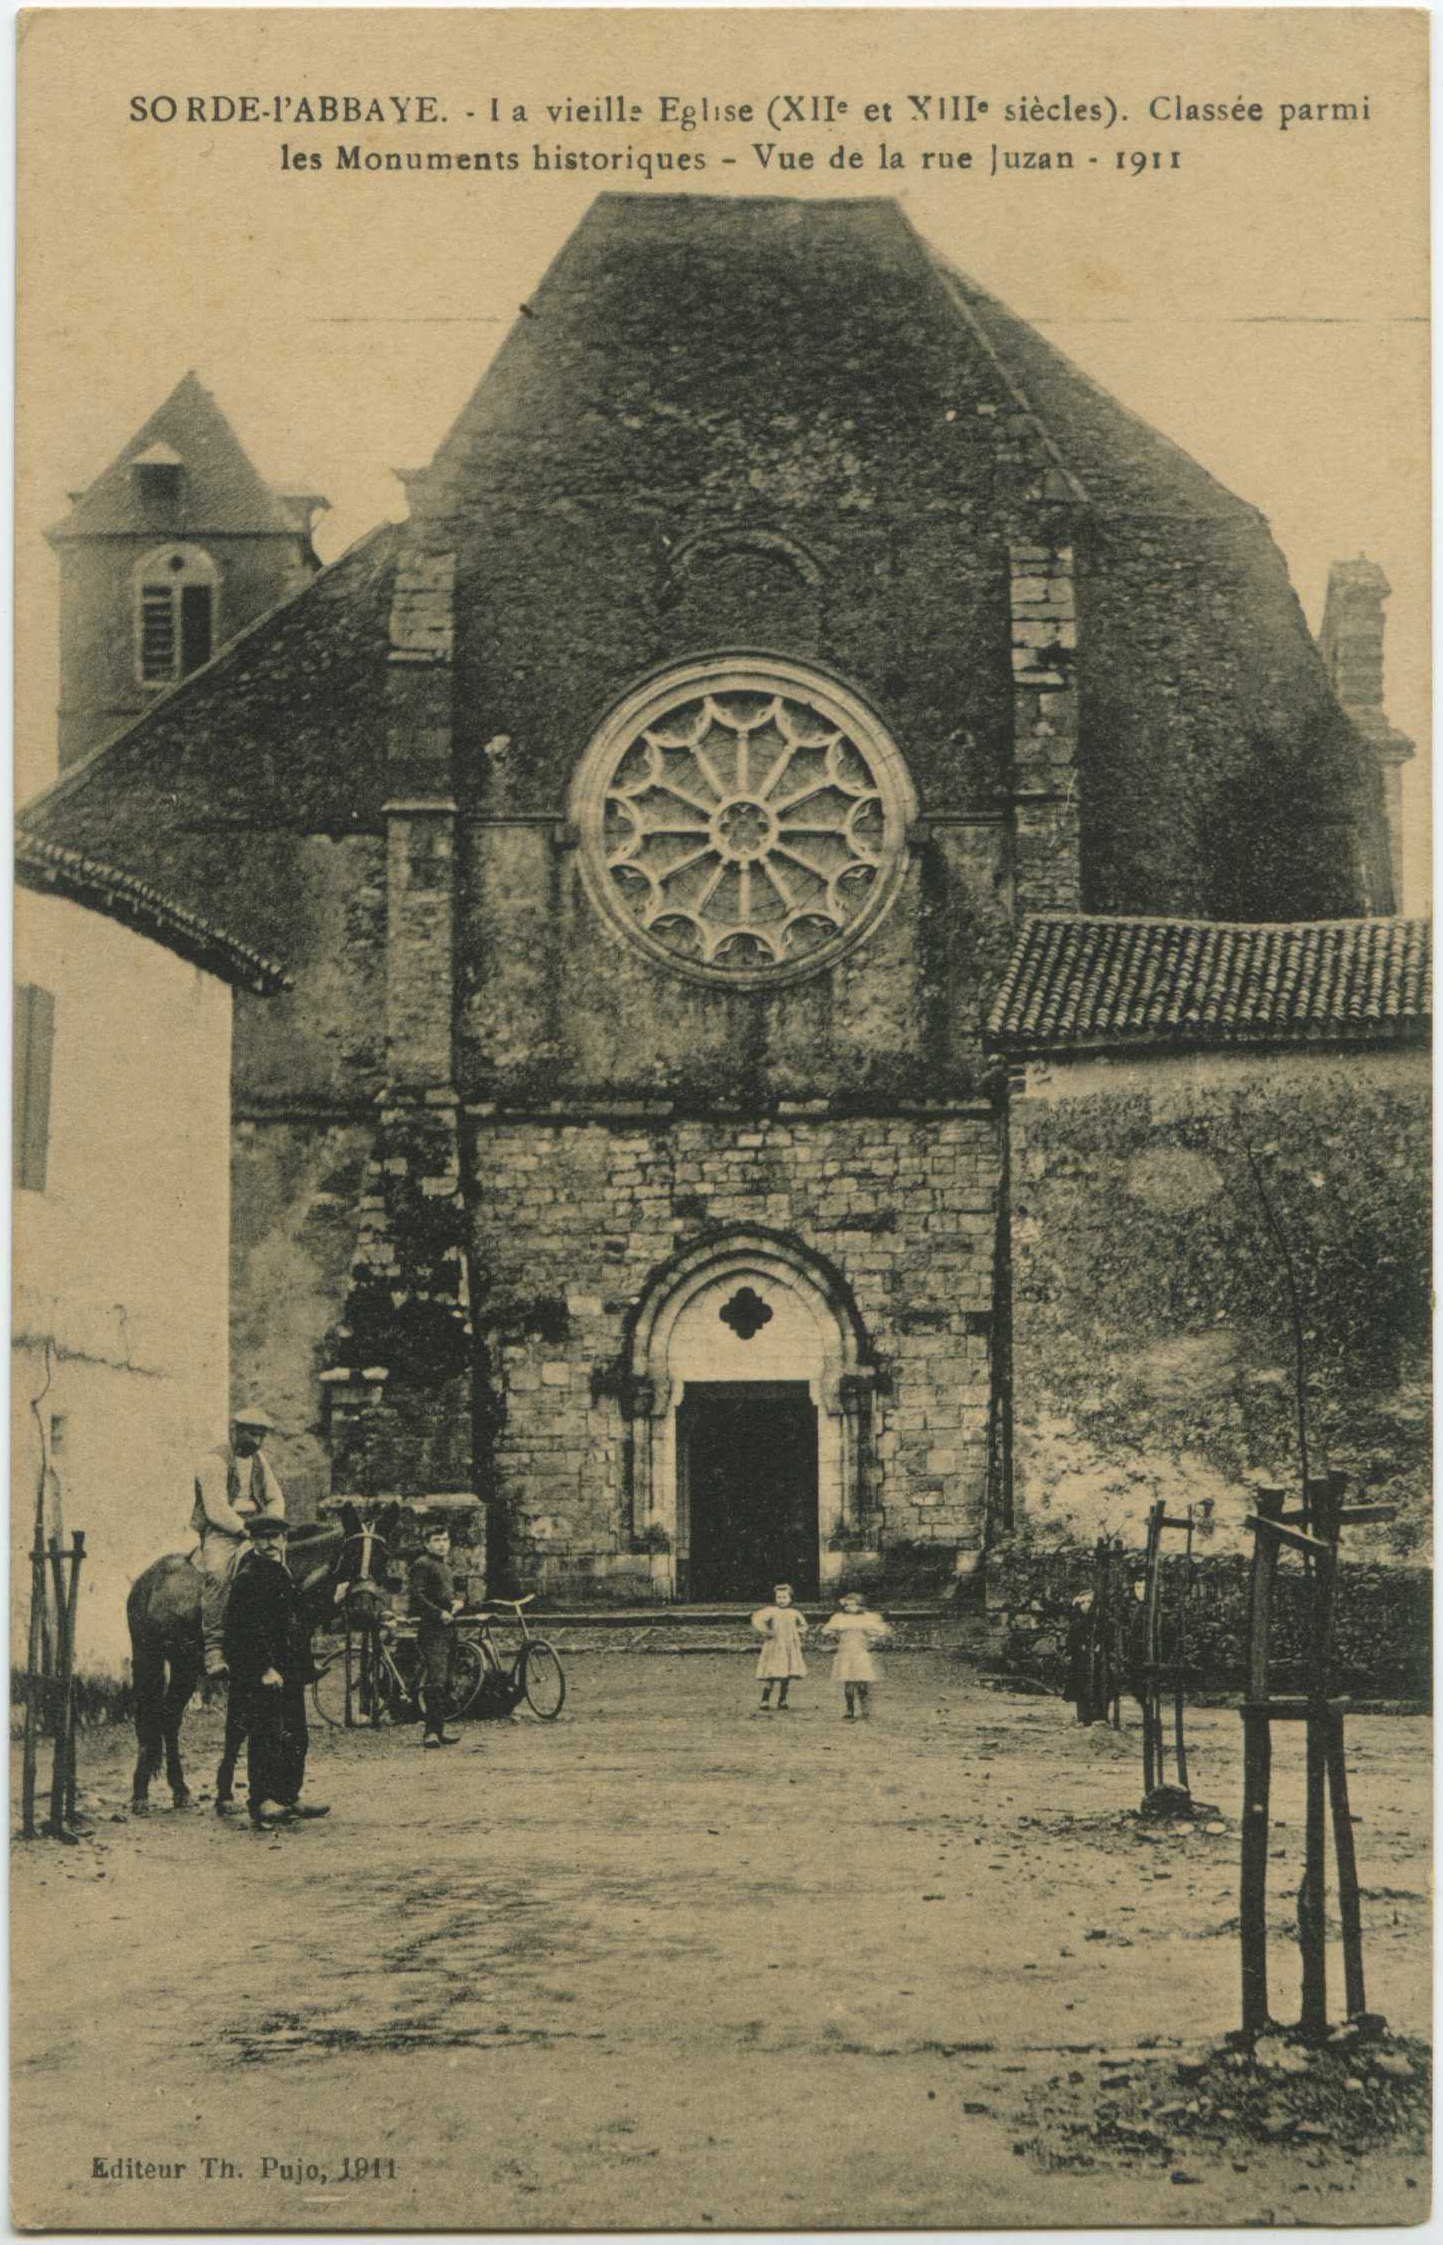 Sorde-l'Abbaye - La vieille Eglise (XII<sup>e</sup> et XIII<sup>e</sup> siècles). Classée parmi les Monuments historiques - Vue de la rue Juzan - 1911